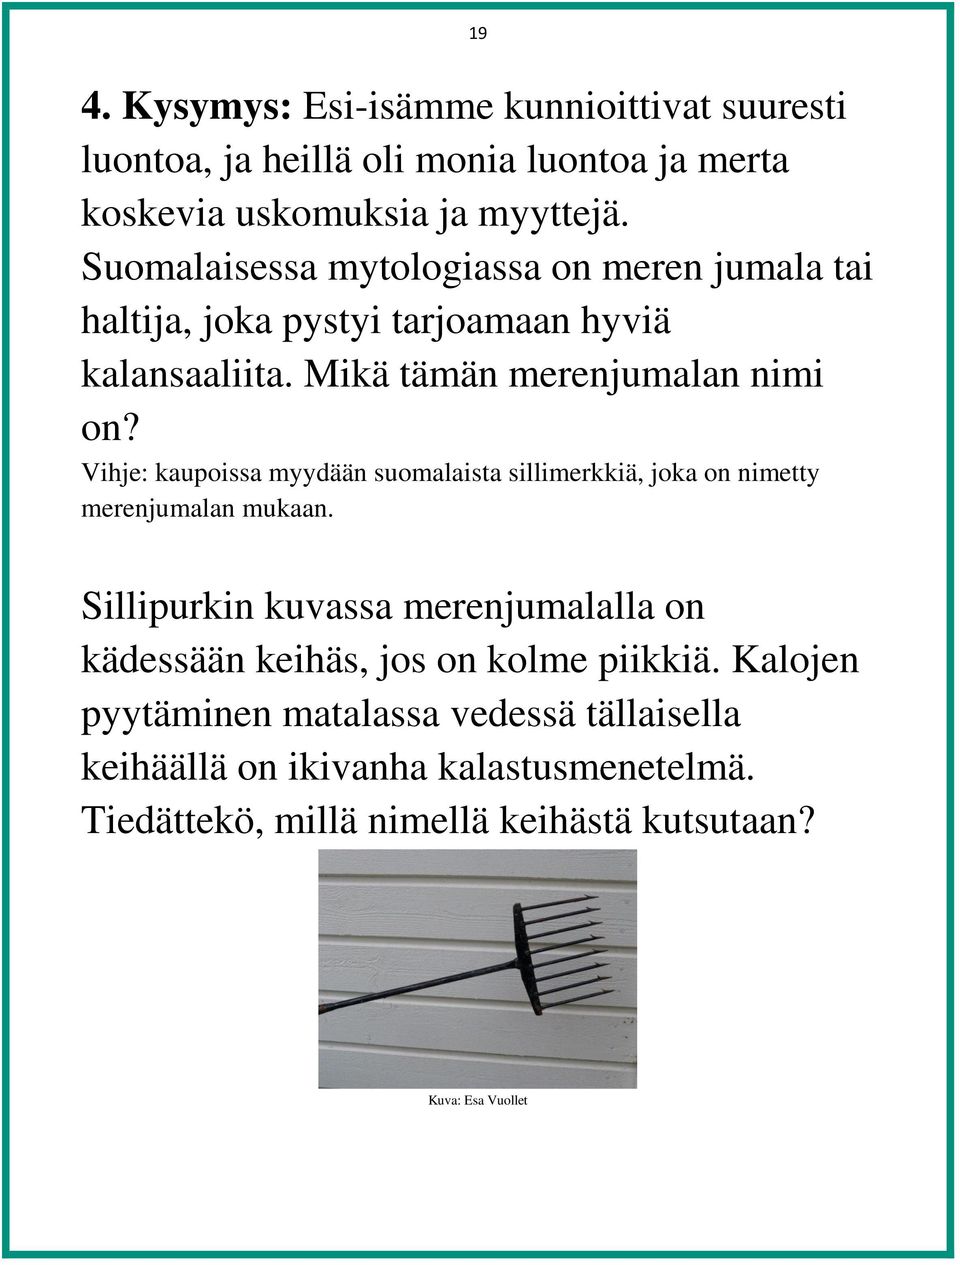 Vihje: kaupoissa myydään suomalaista sillimerkkiä, joka on nimetty merenjumalan mukaan.